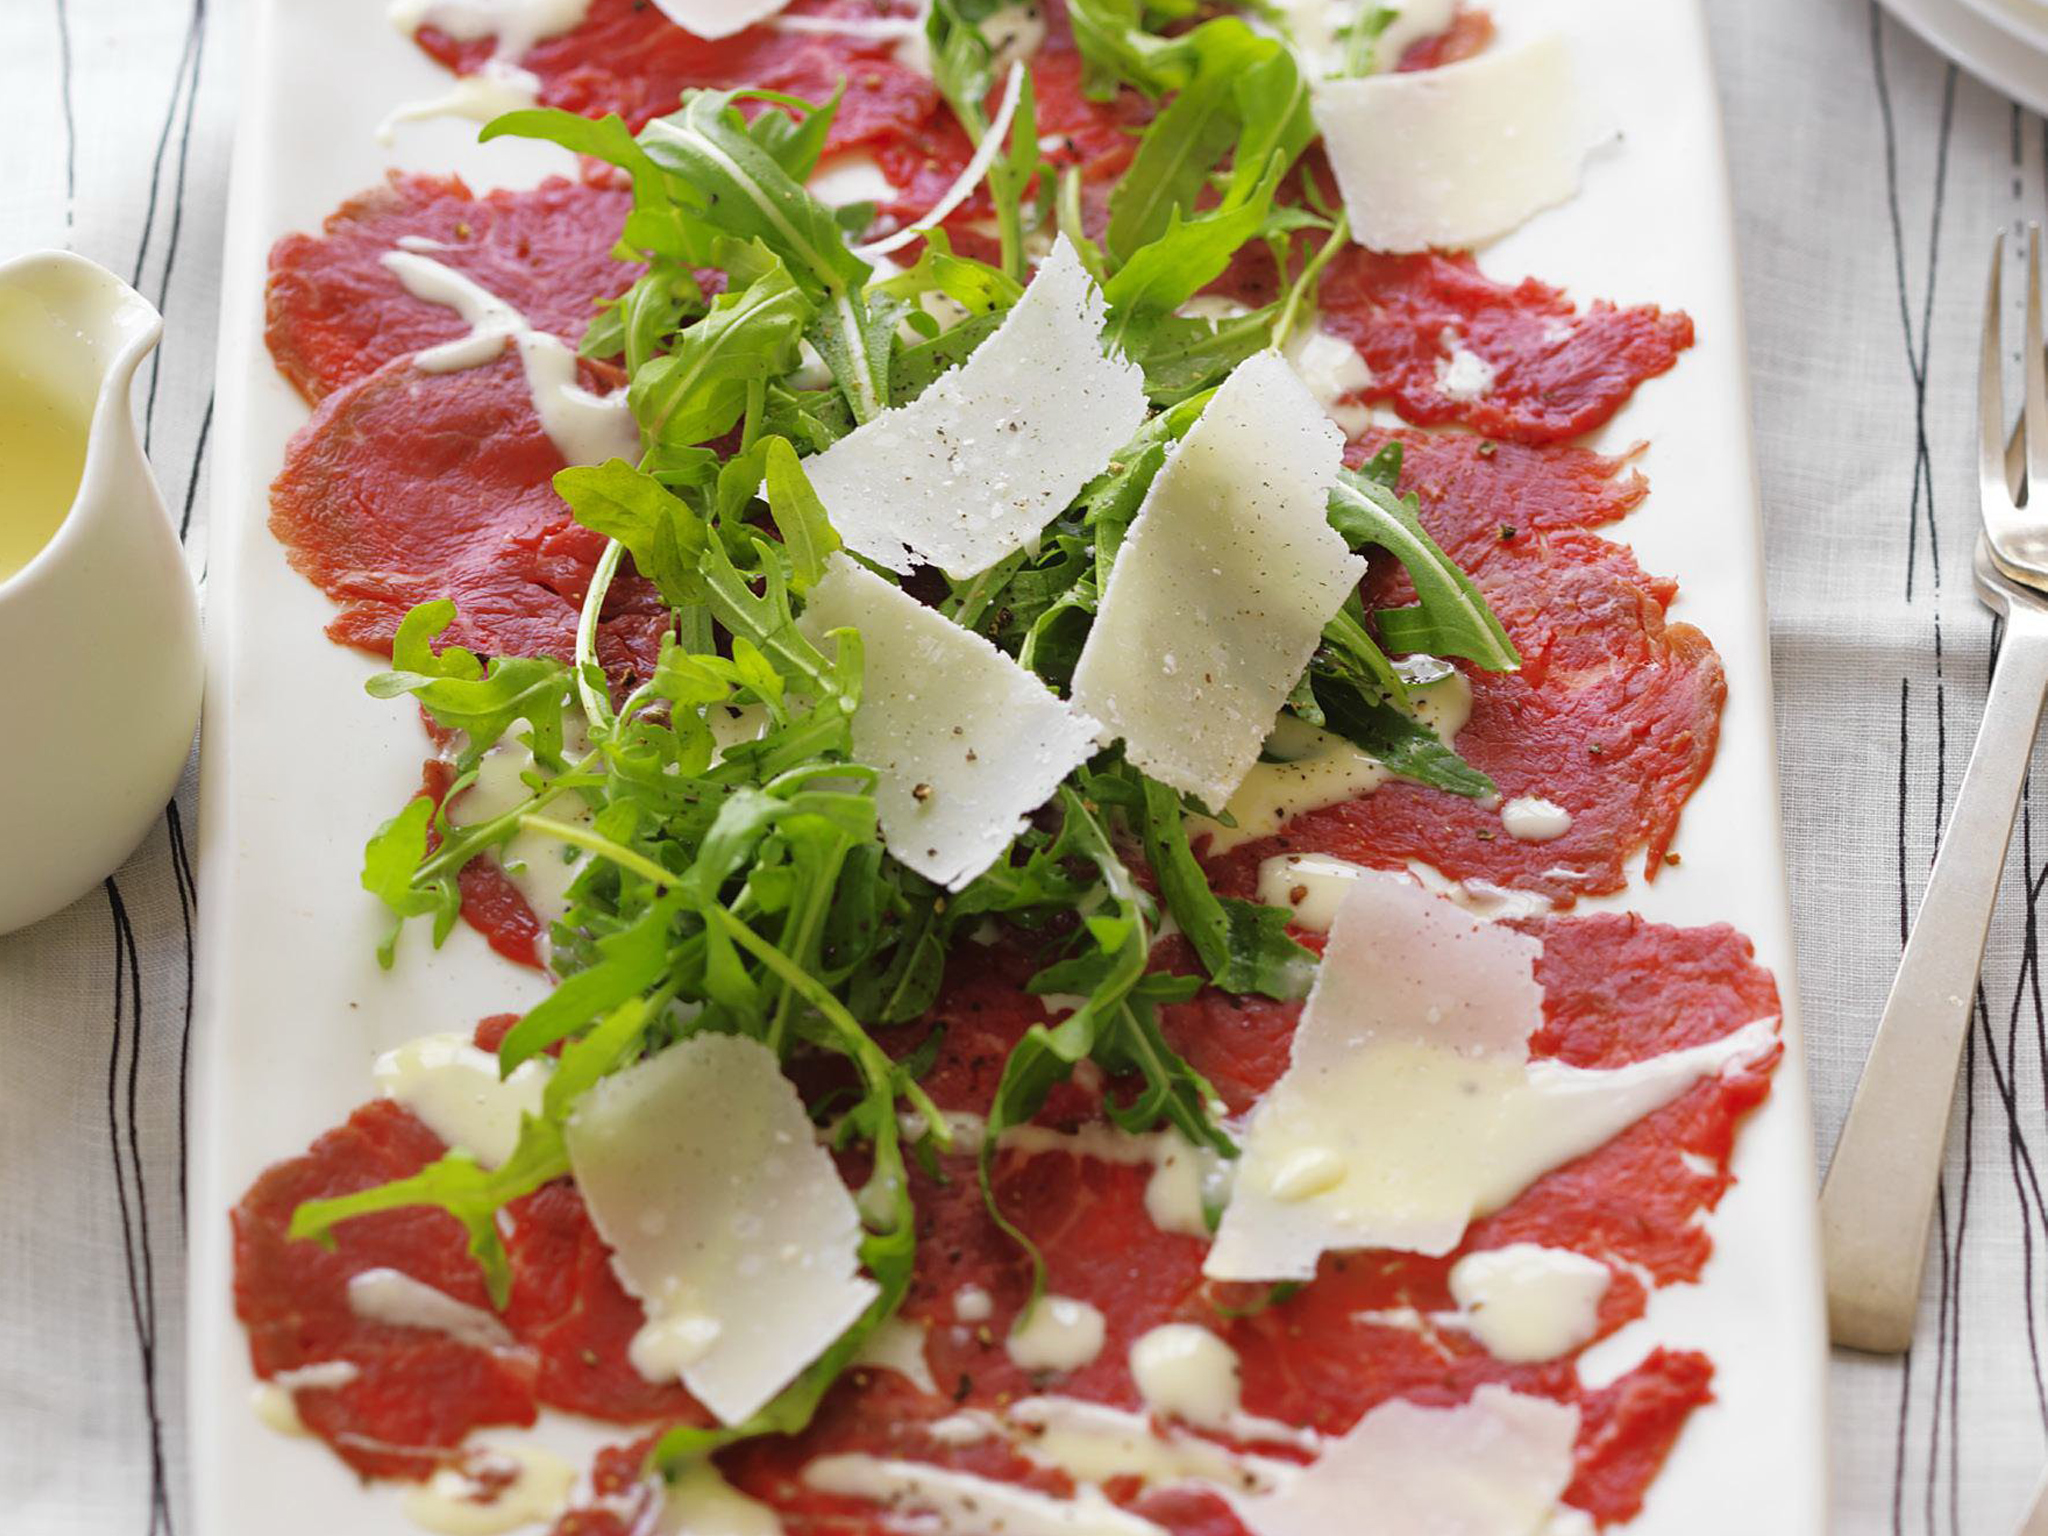 Carpaccio - Spécialité Italienne - Viande crue, finement trachée , proposée avec une salade, huile d'olive, copeaux de Parmesan et basilic